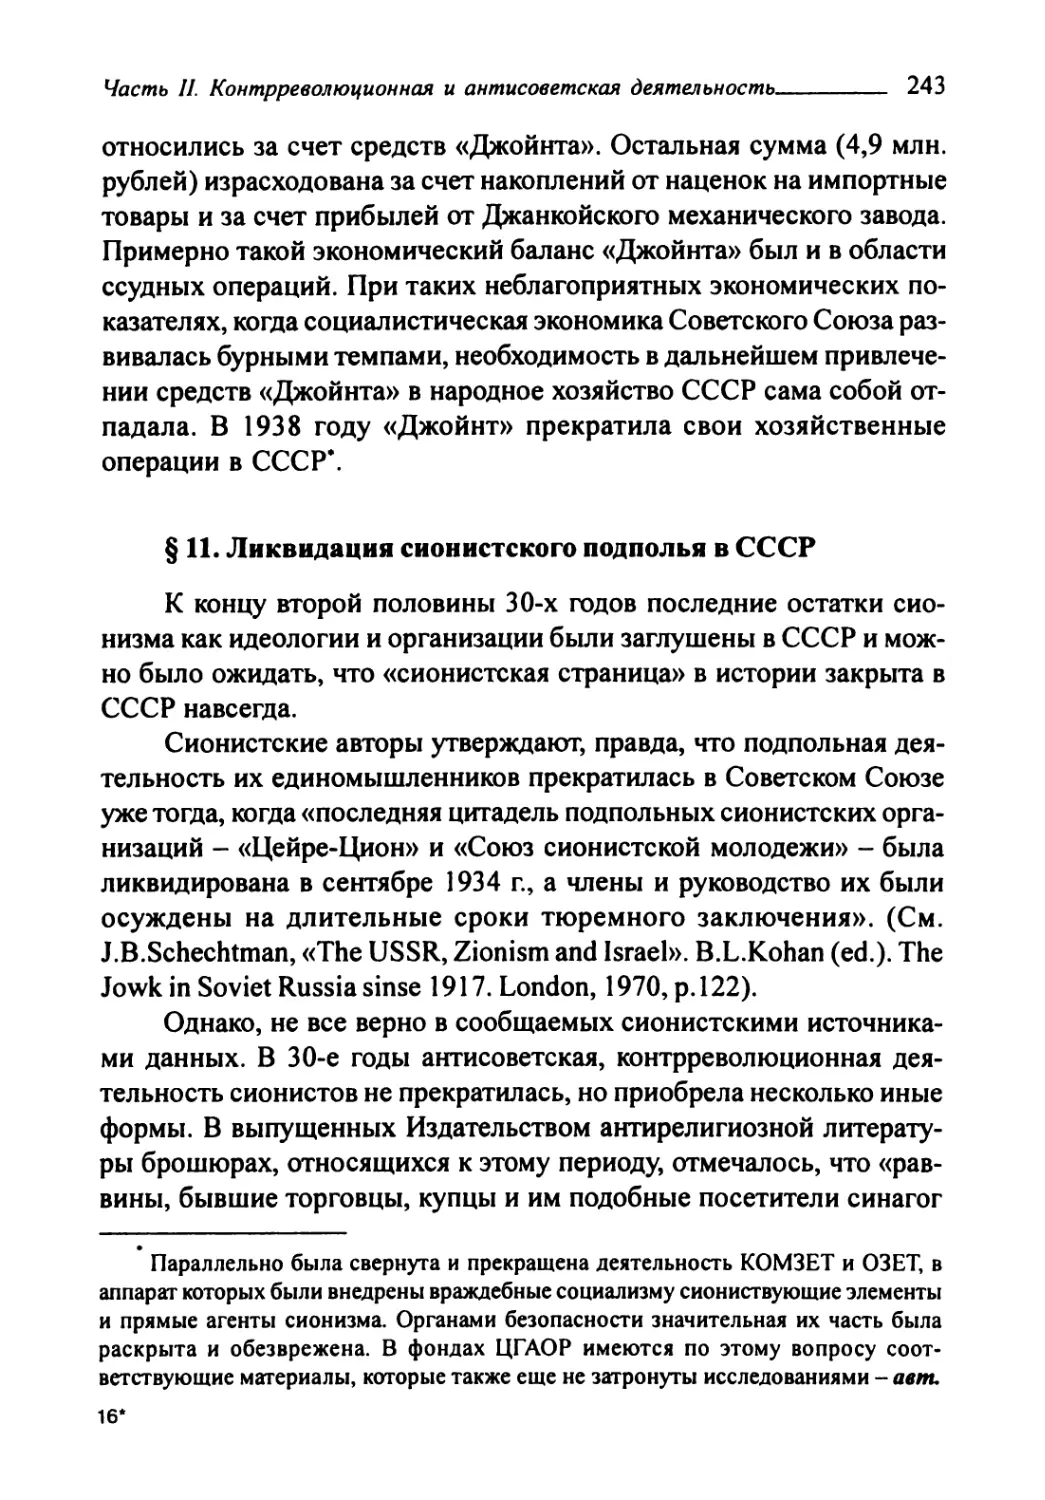 § 11. Ликвидация сионистского подполья в СССР